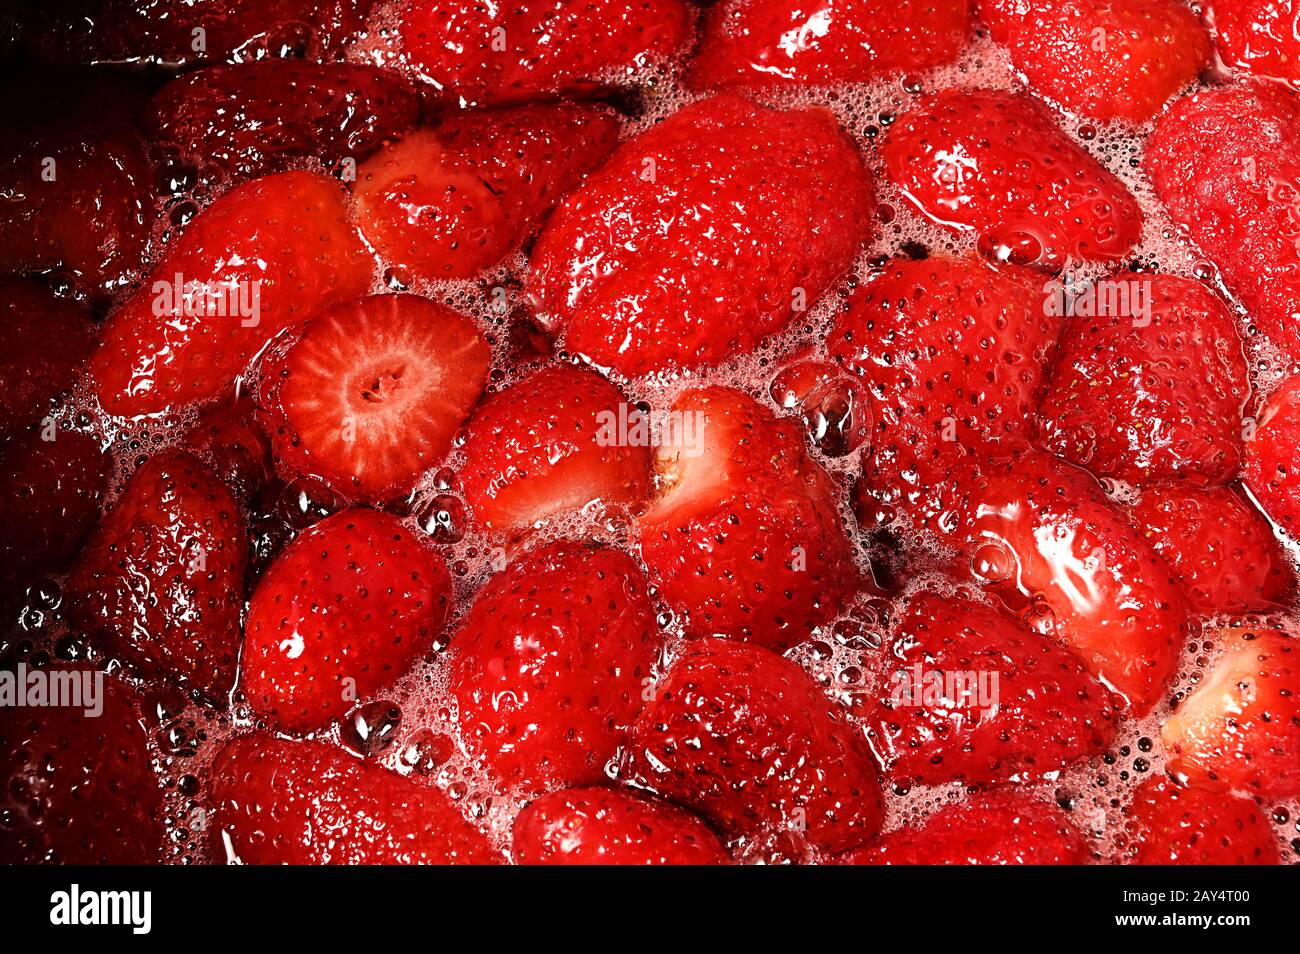 fraises fraîches, fraises et sucre dans une casserole à la confiture Banque D'Images